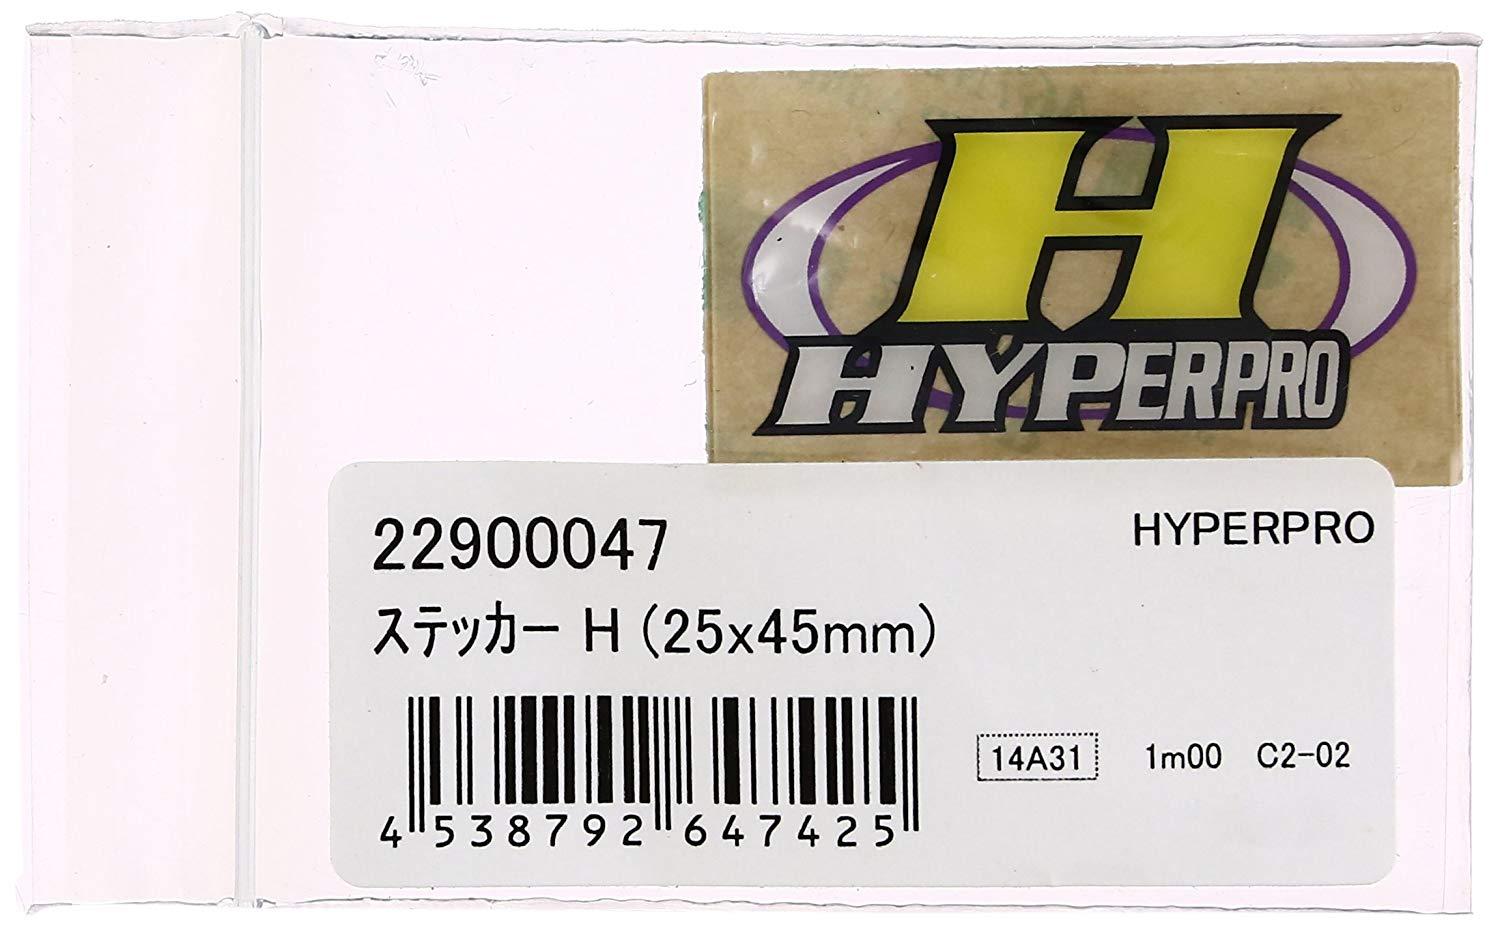 HYPERPRO XebJ[ H (25x45mm)  22900047